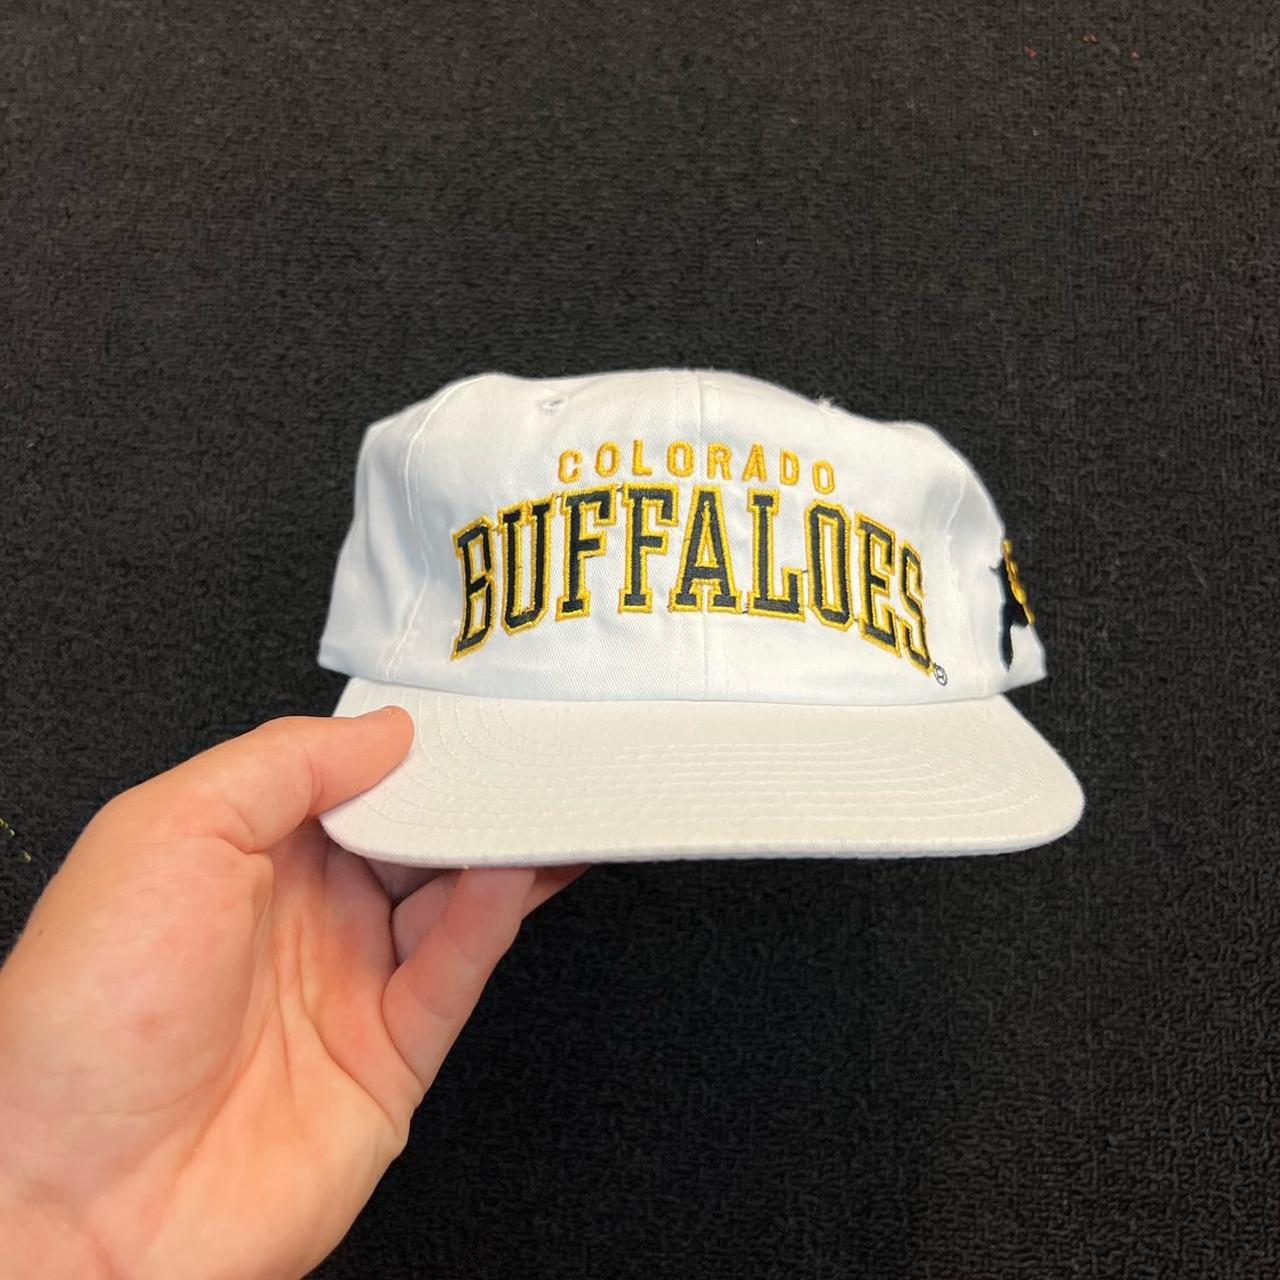 90s Colorado Buffalos Starter hat #vintage... - Depop